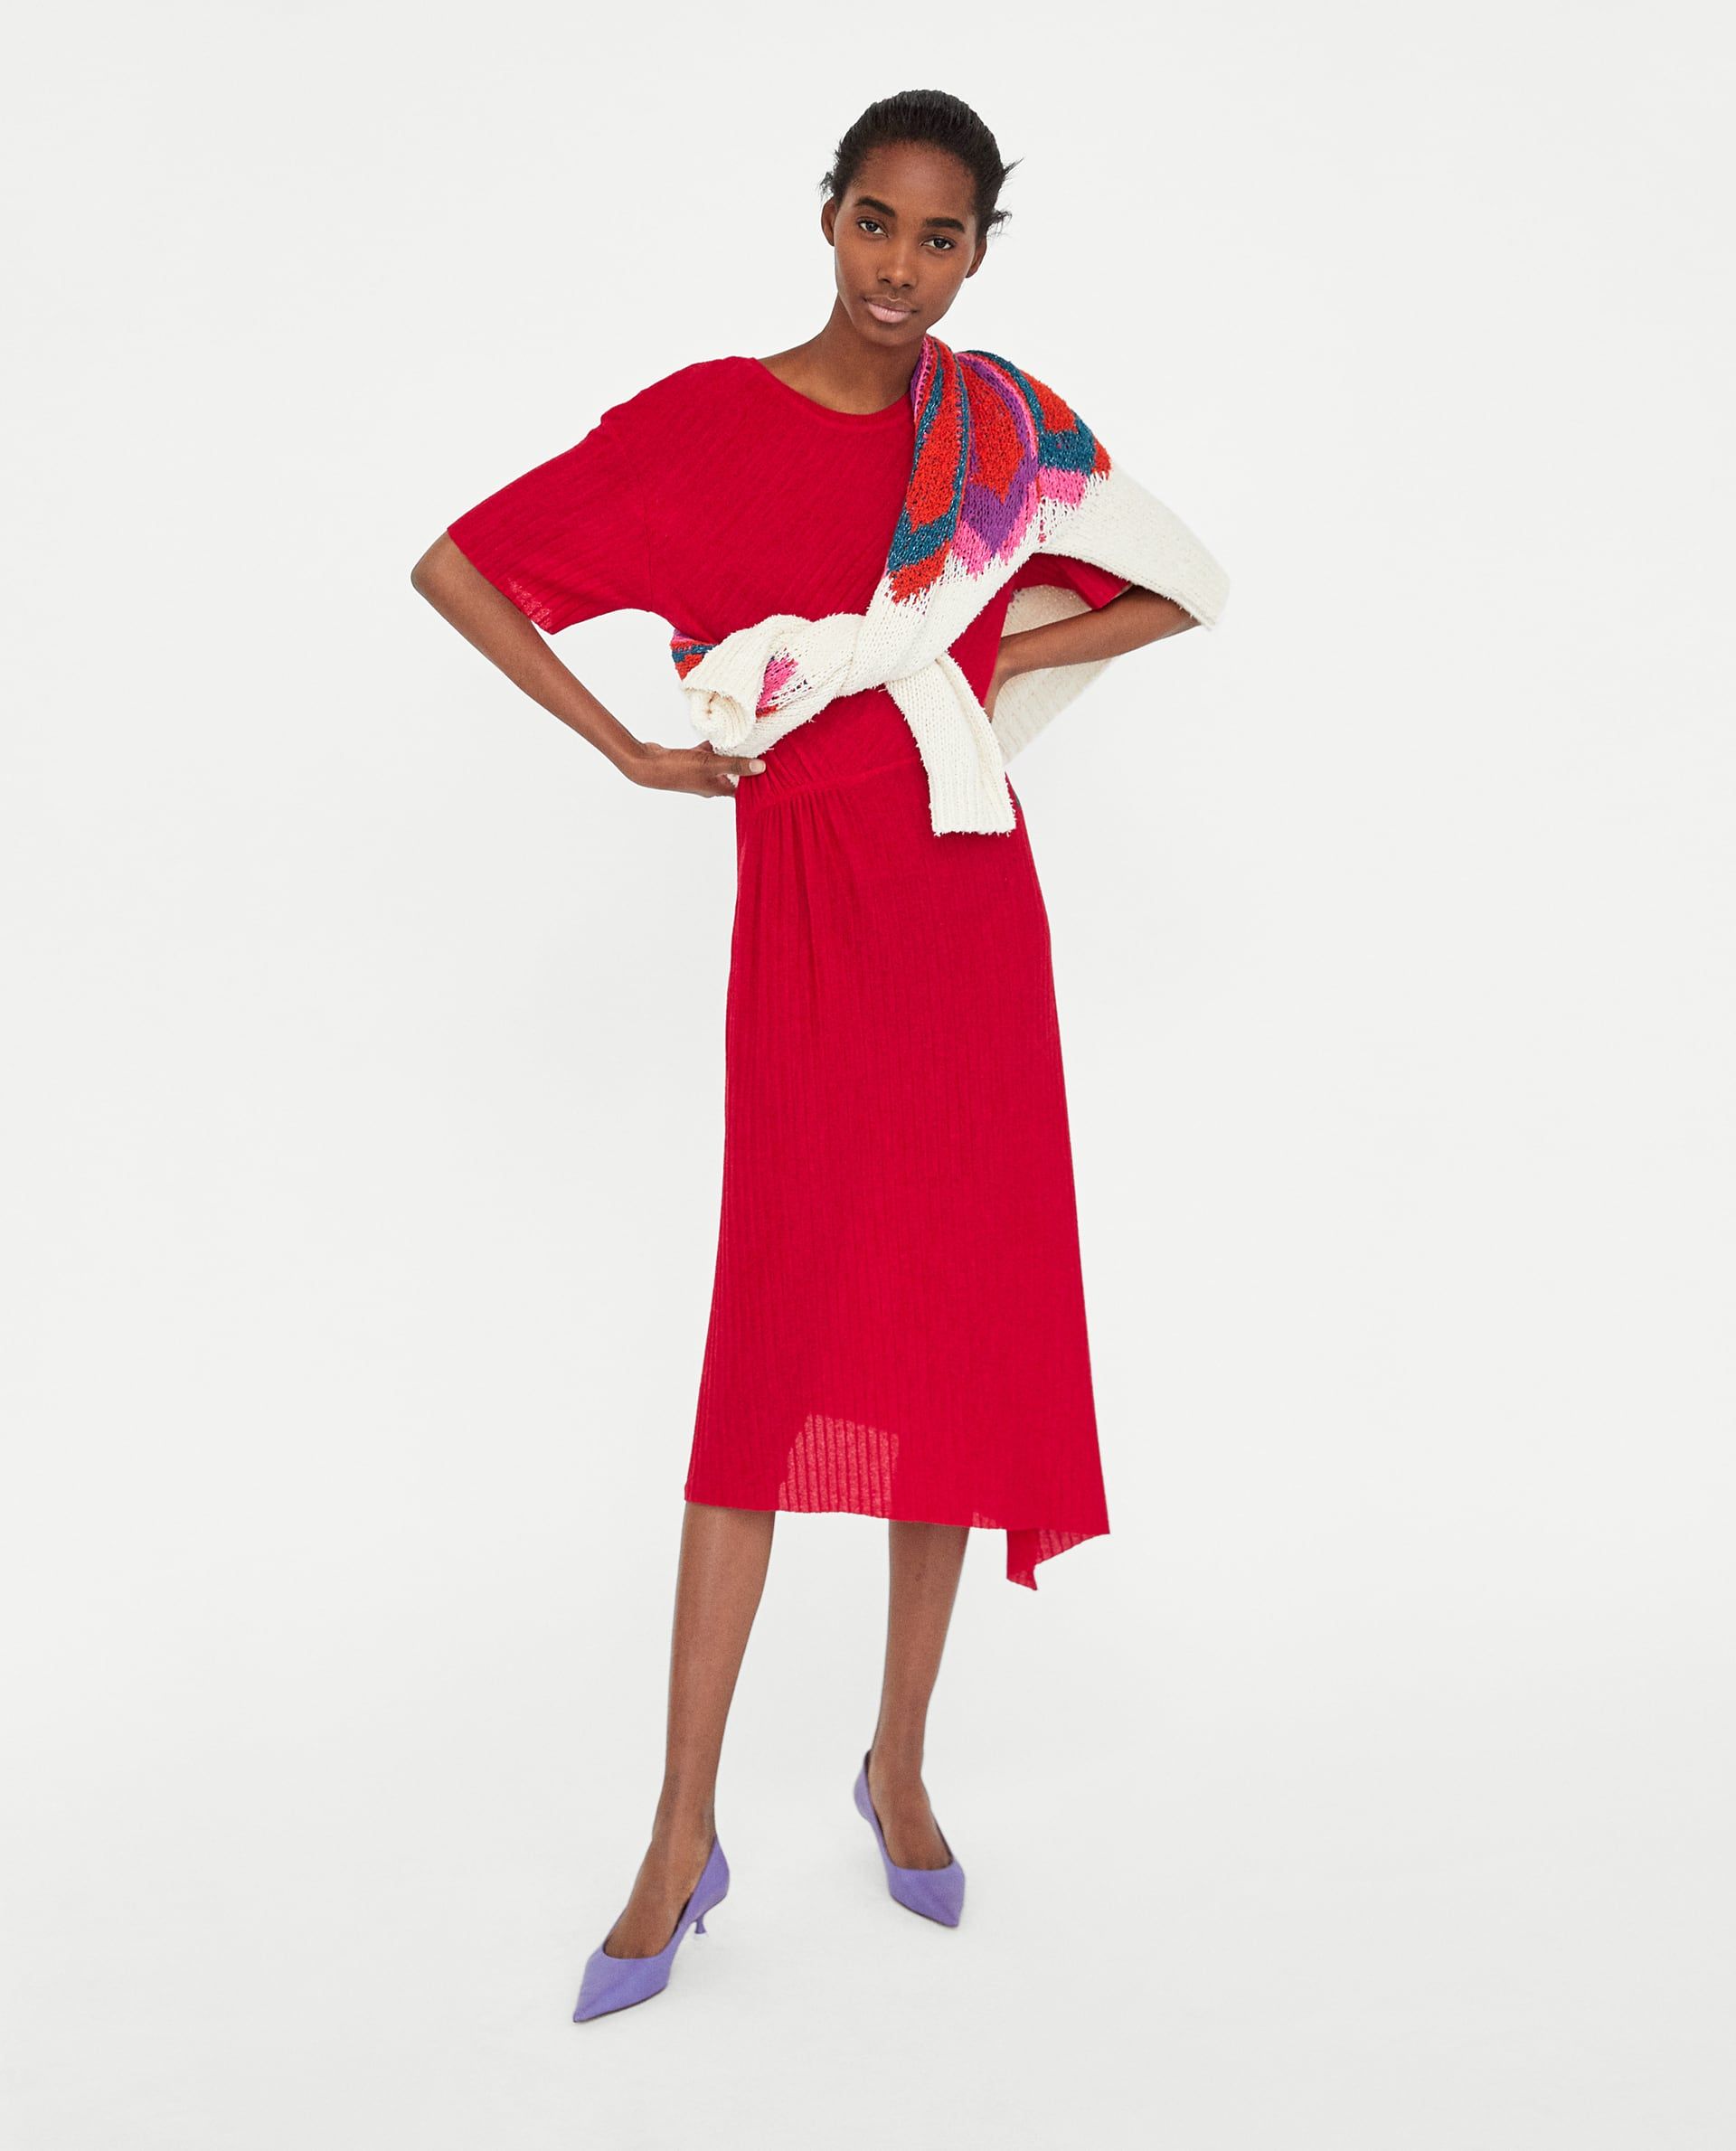 Zara's Got Your Midi-Dress Needs Sorted | Oye! Times